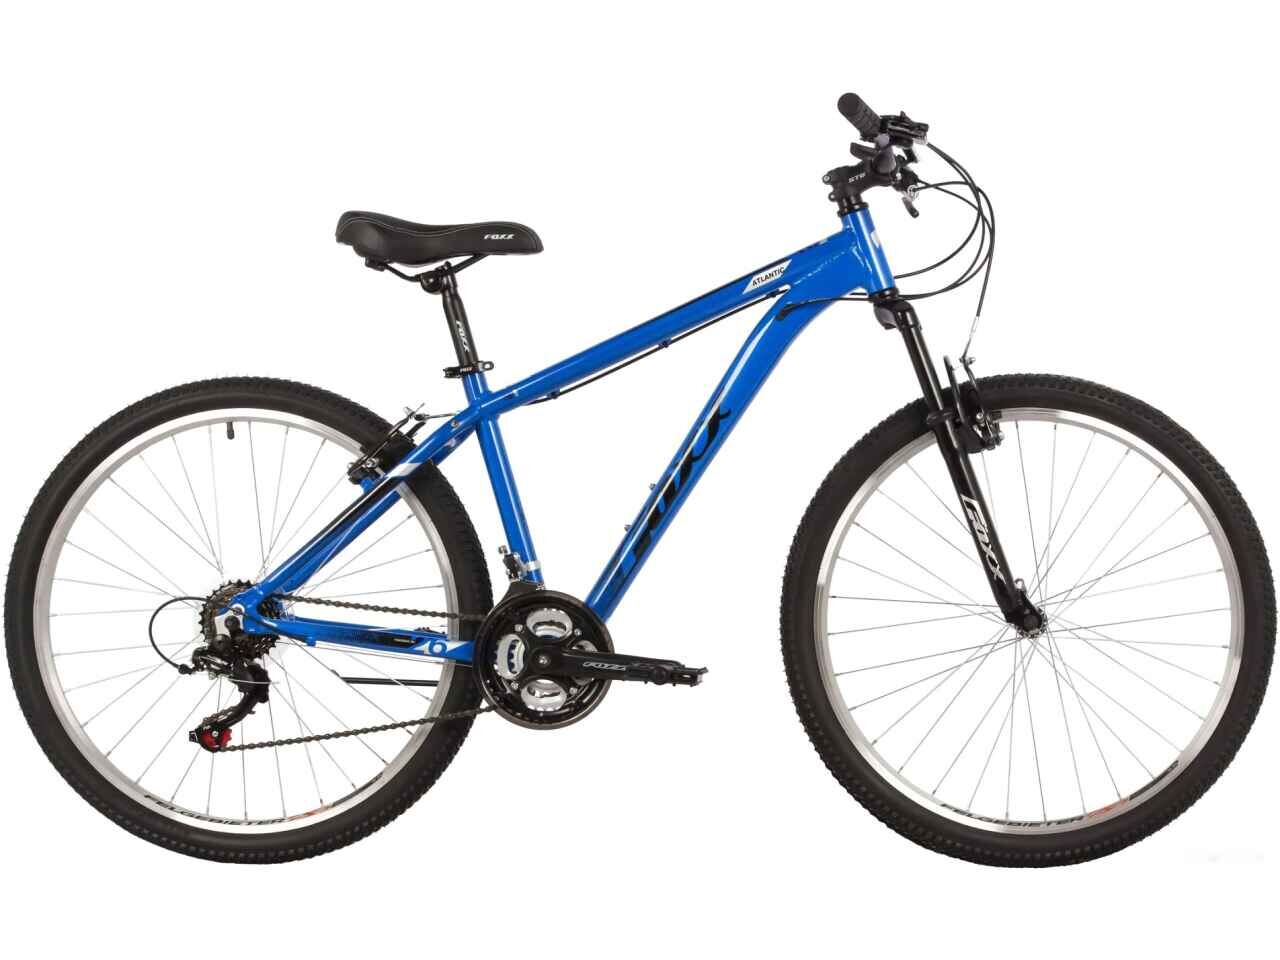 Велосипед Foxx Atlantic 26 р.14 2022 (синий)